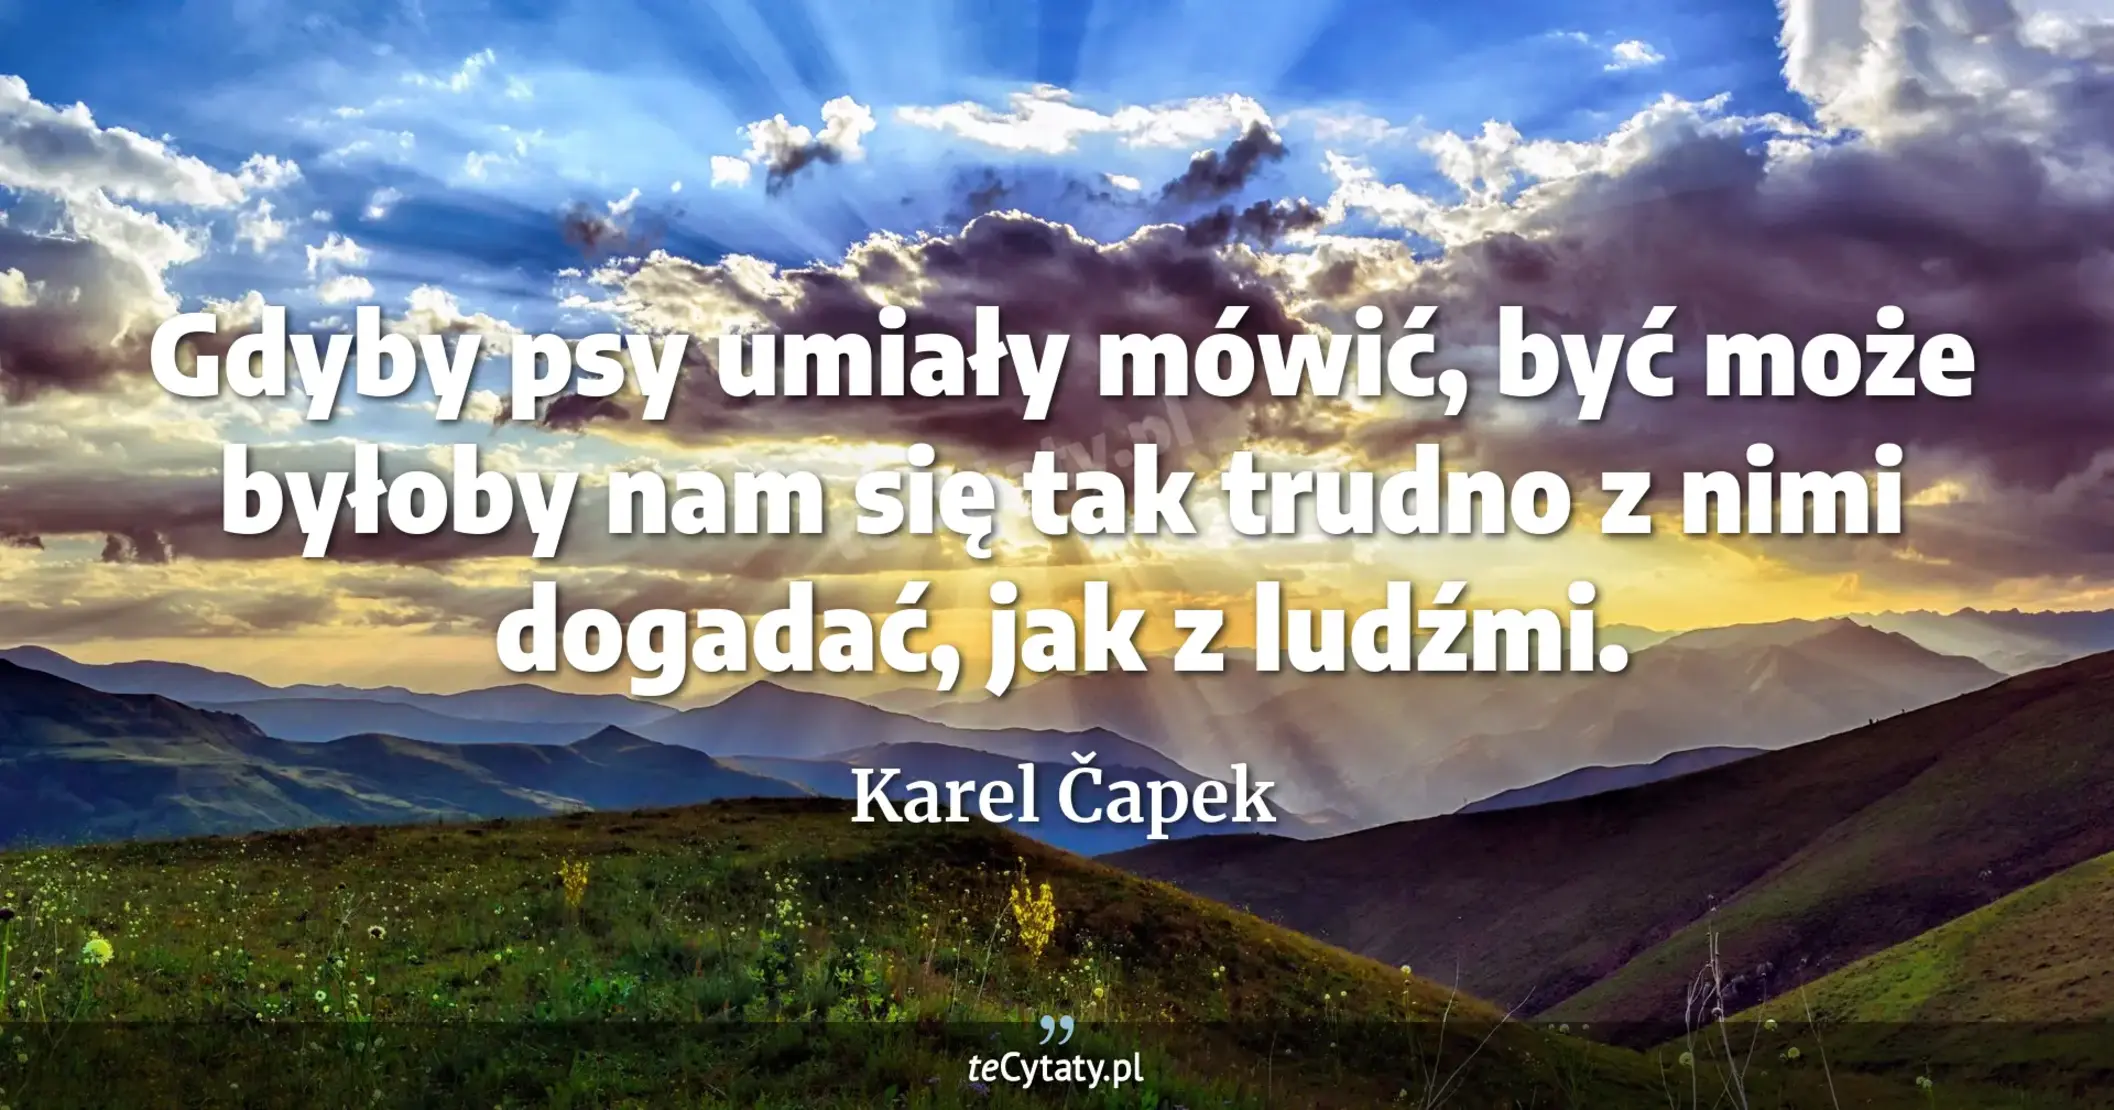 Gdyby psy umiały mówić, być może byłoby nam się tak trudno z nimi dogadać, jak z ludźmi. - Karel Čapek